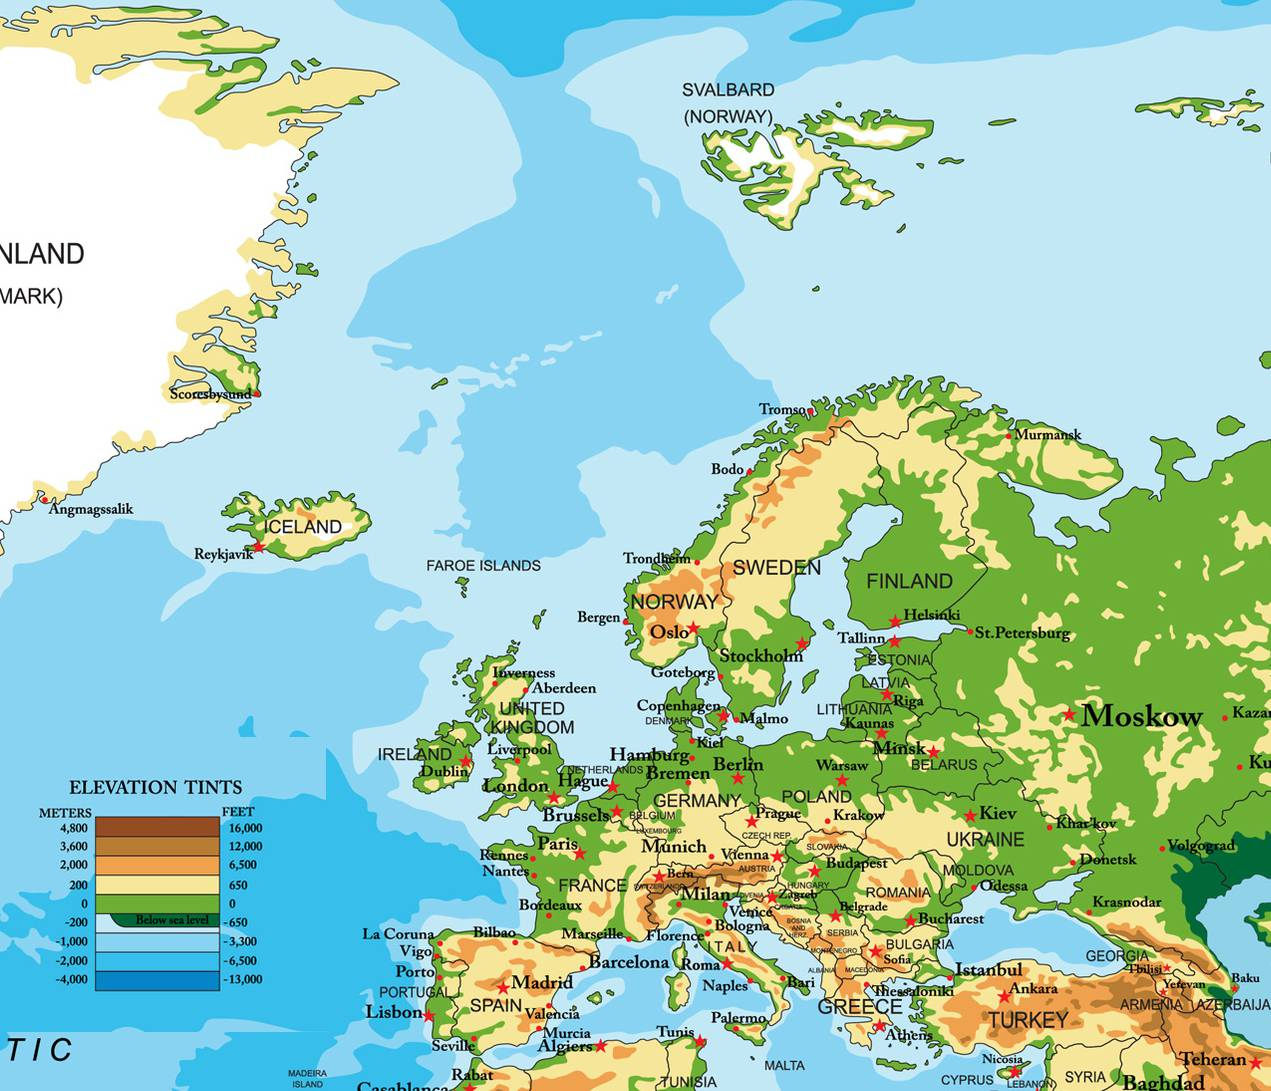 Carte De L'europe - Cartes Reliefs, Villes, Pays, Euro, Ue concernant Carte Europe Est